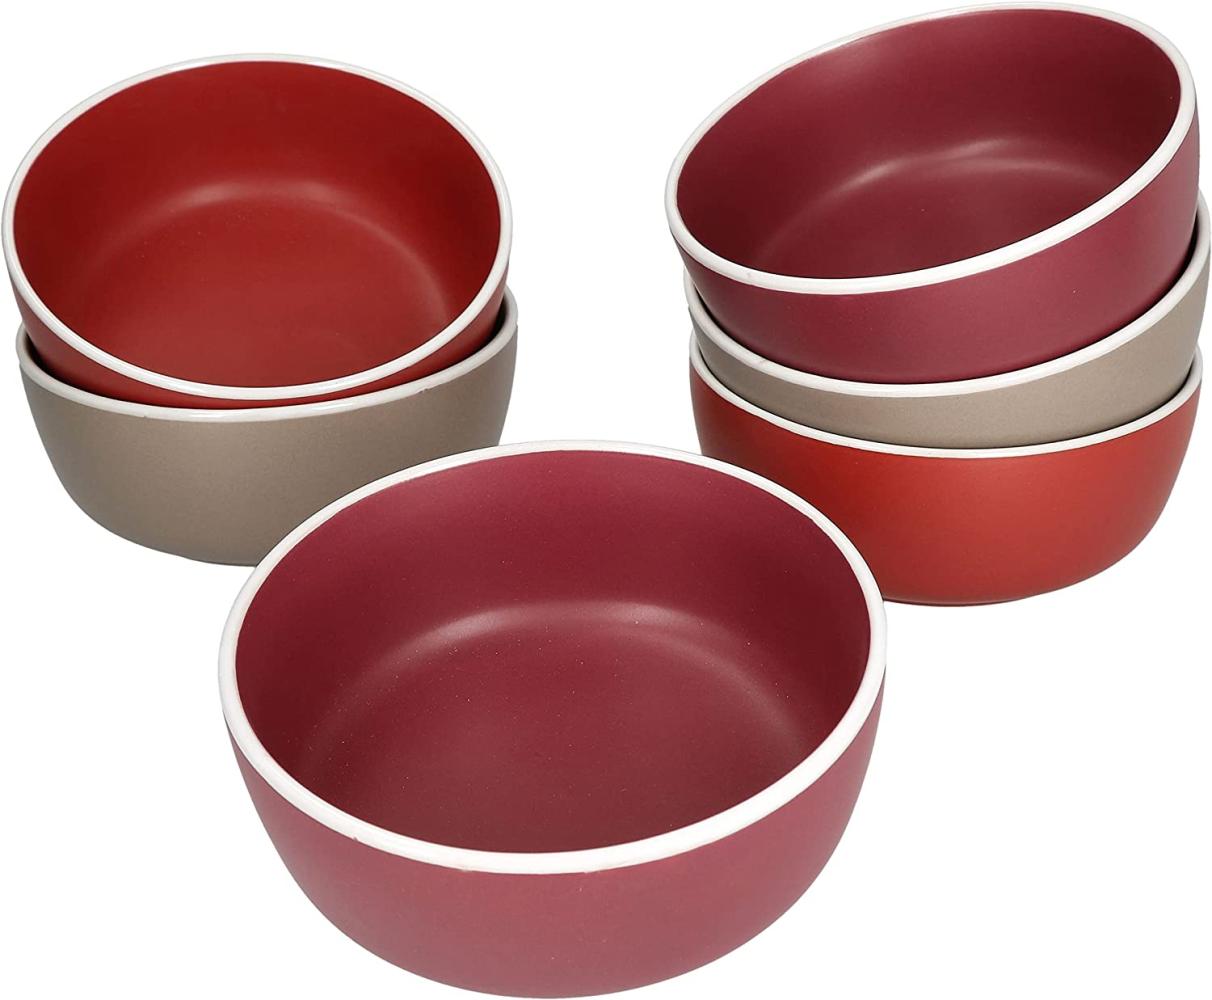 6er Set Bowl-Schale Liz 550ml Schüssel Sand Terracotta Rot Dessert Salatschüssel Bild 1